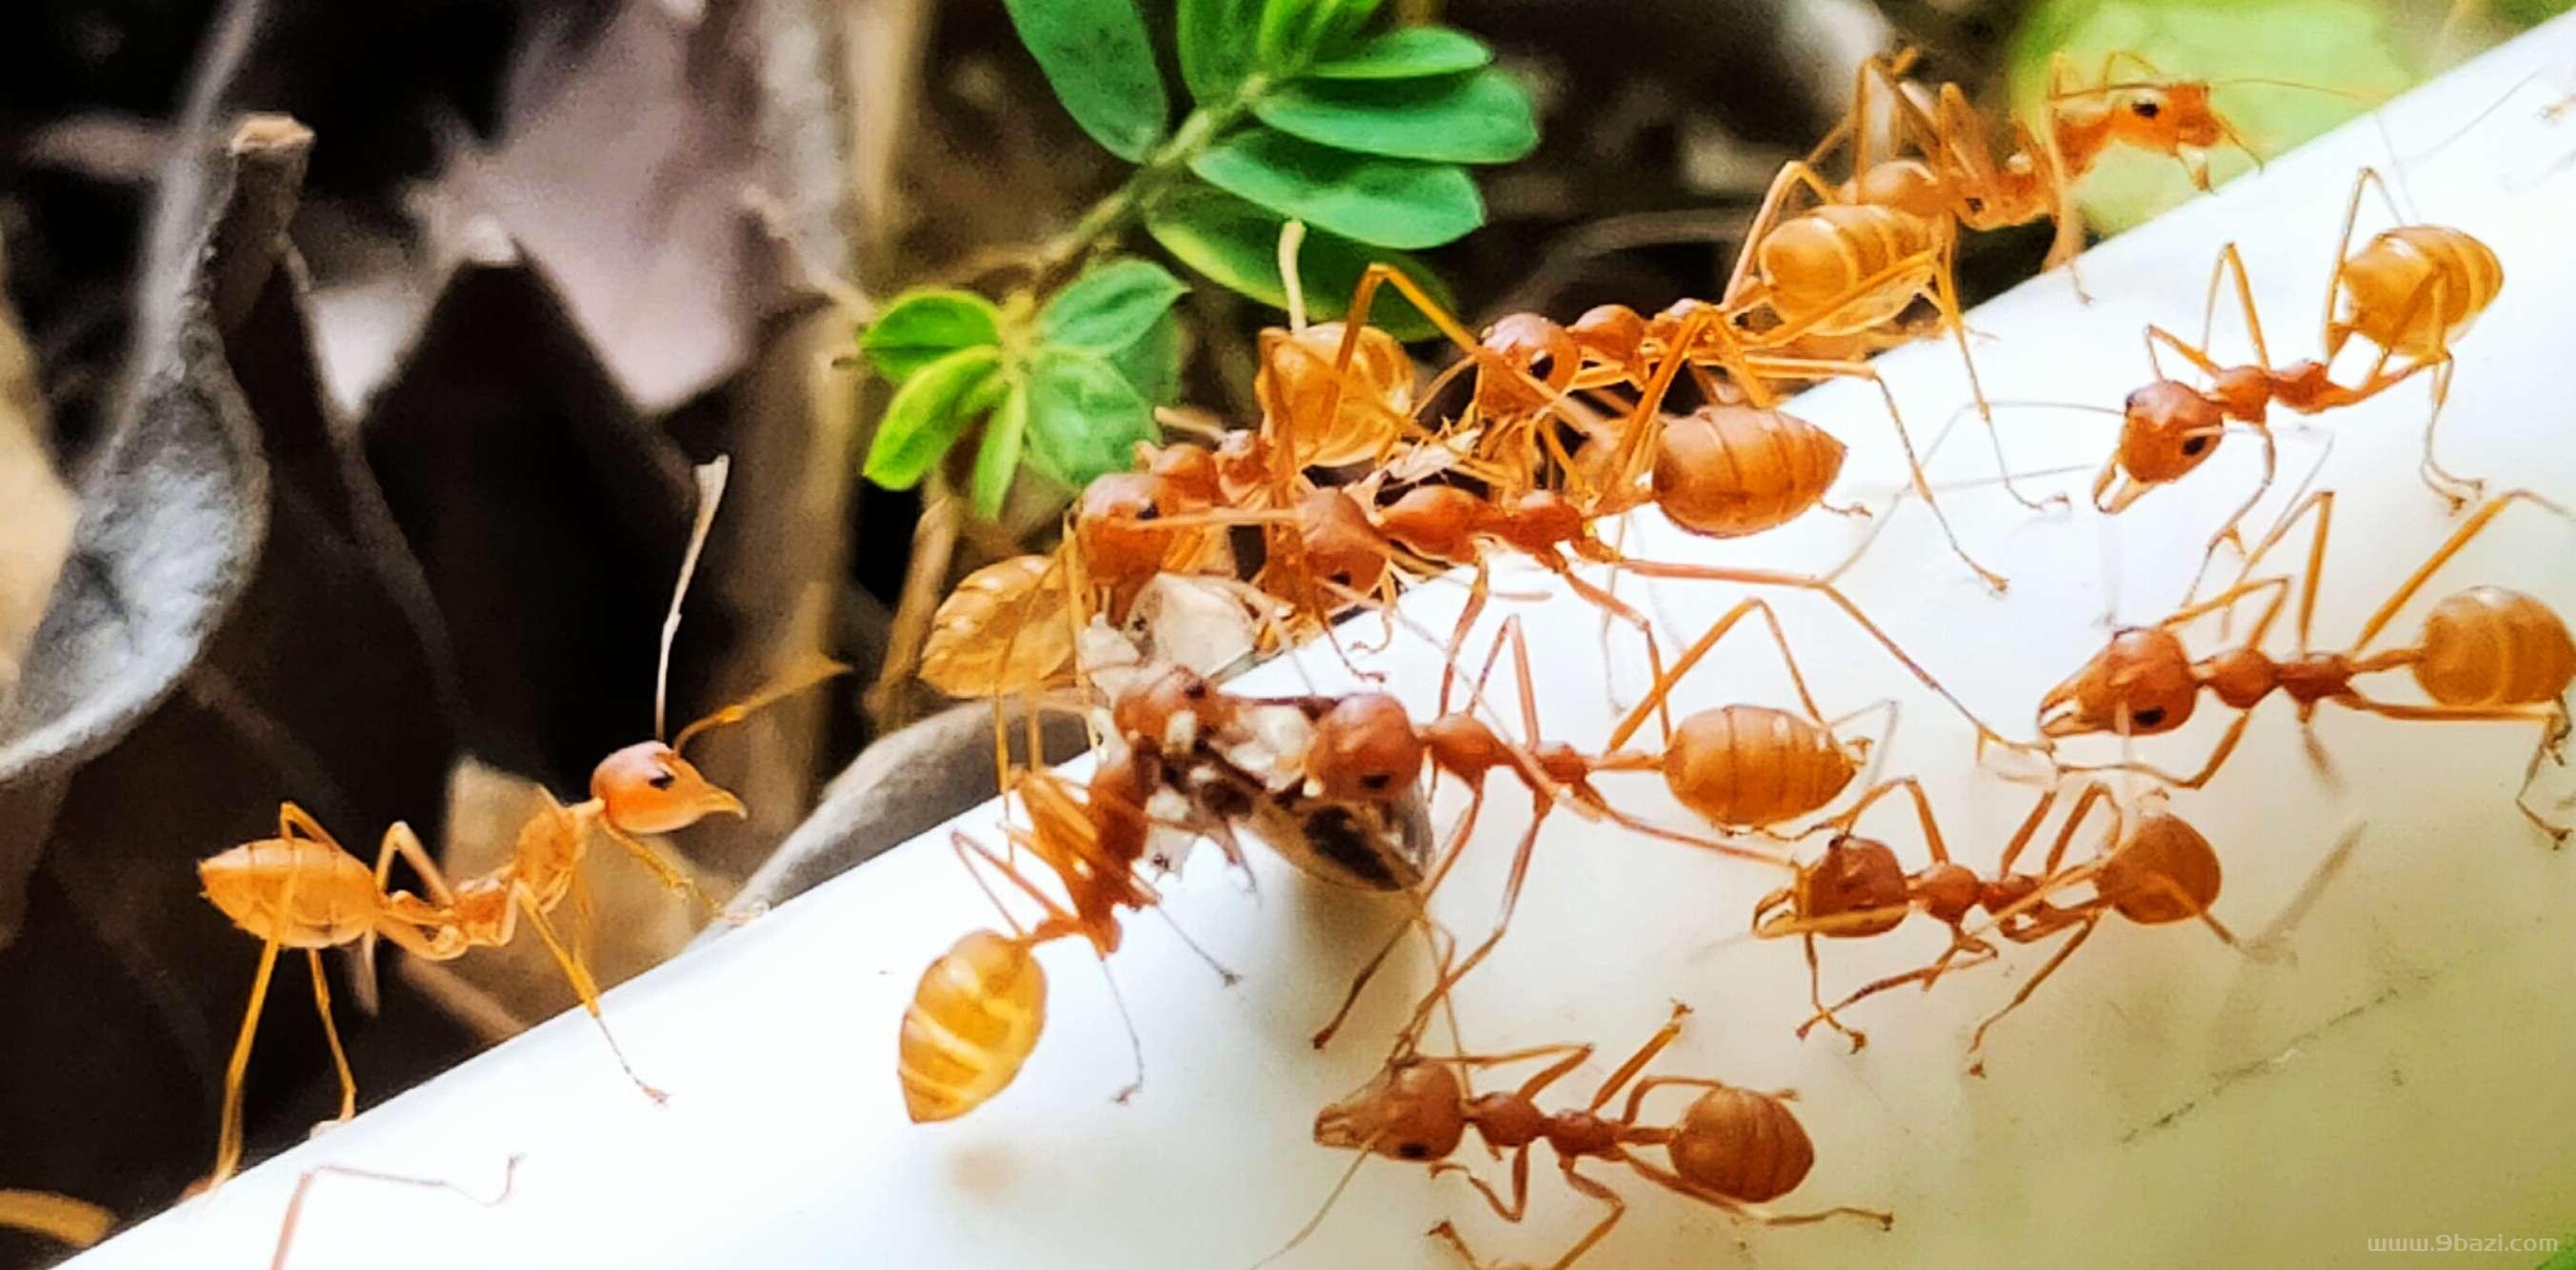 2、红蚂蚁的食物婚配繁殖寿命:红蚂蚁怎么繁殖后代